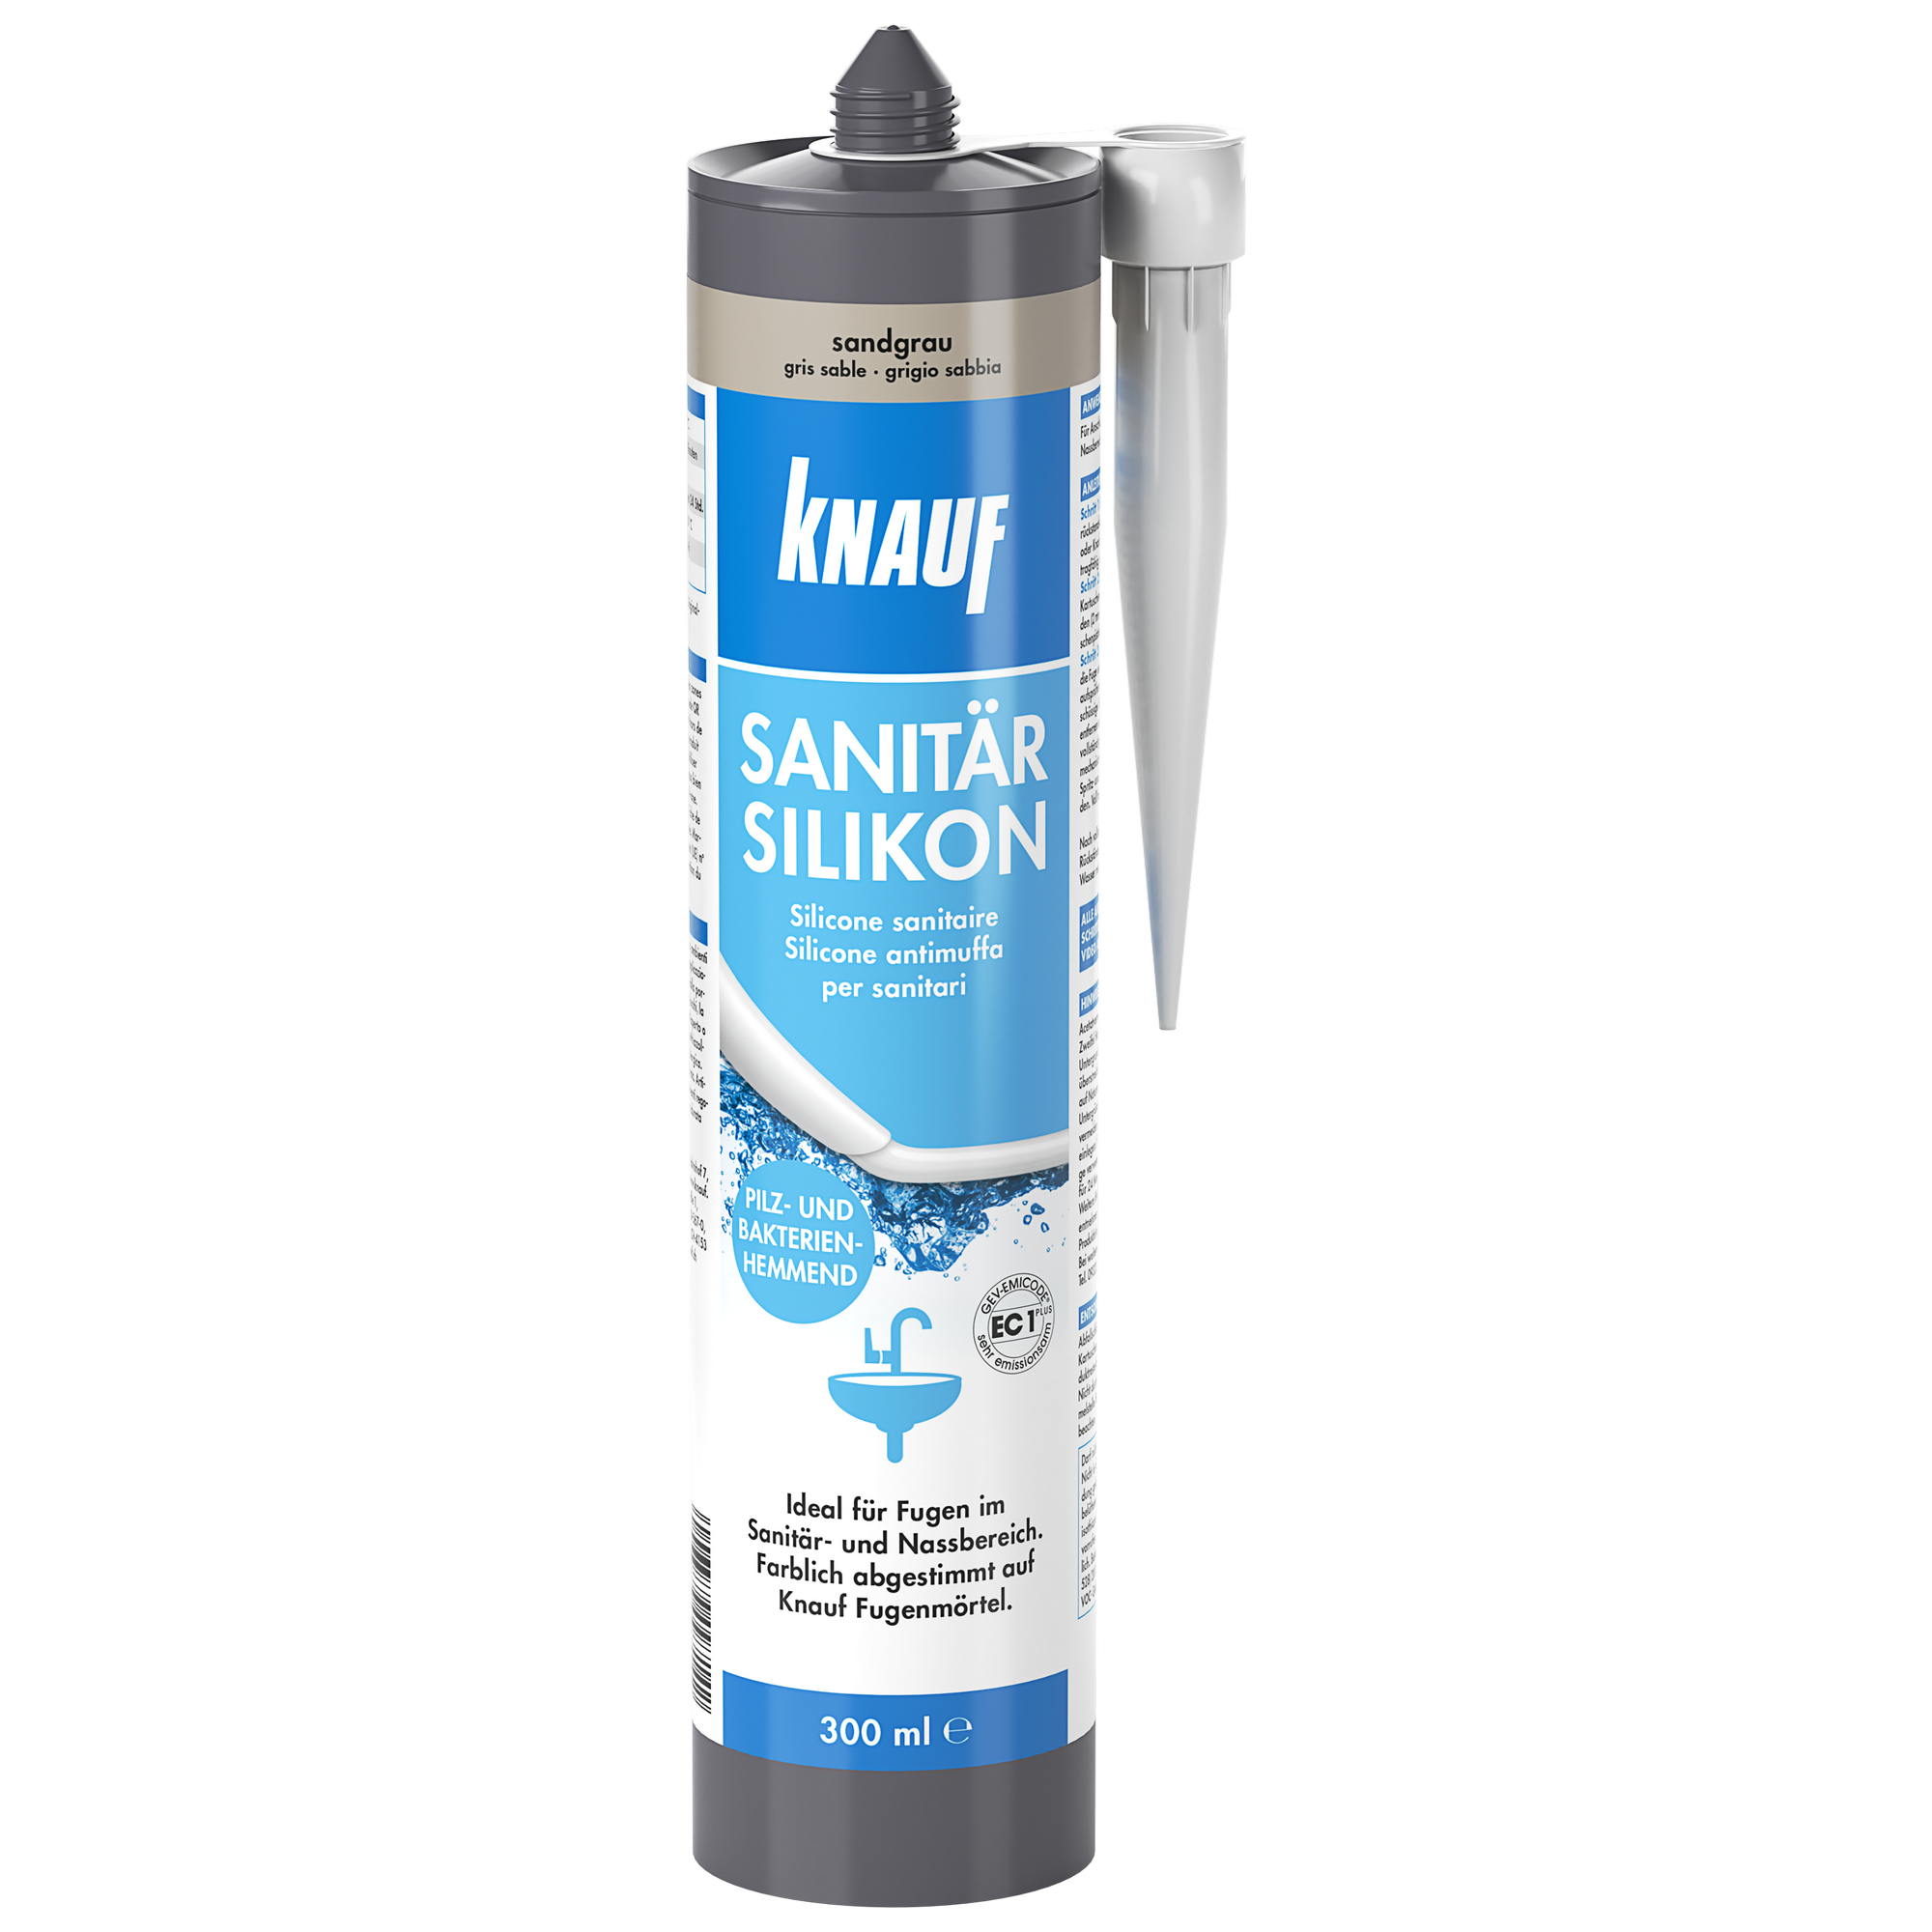 Sanitärsilikon sandgrau 300 ml + product picture